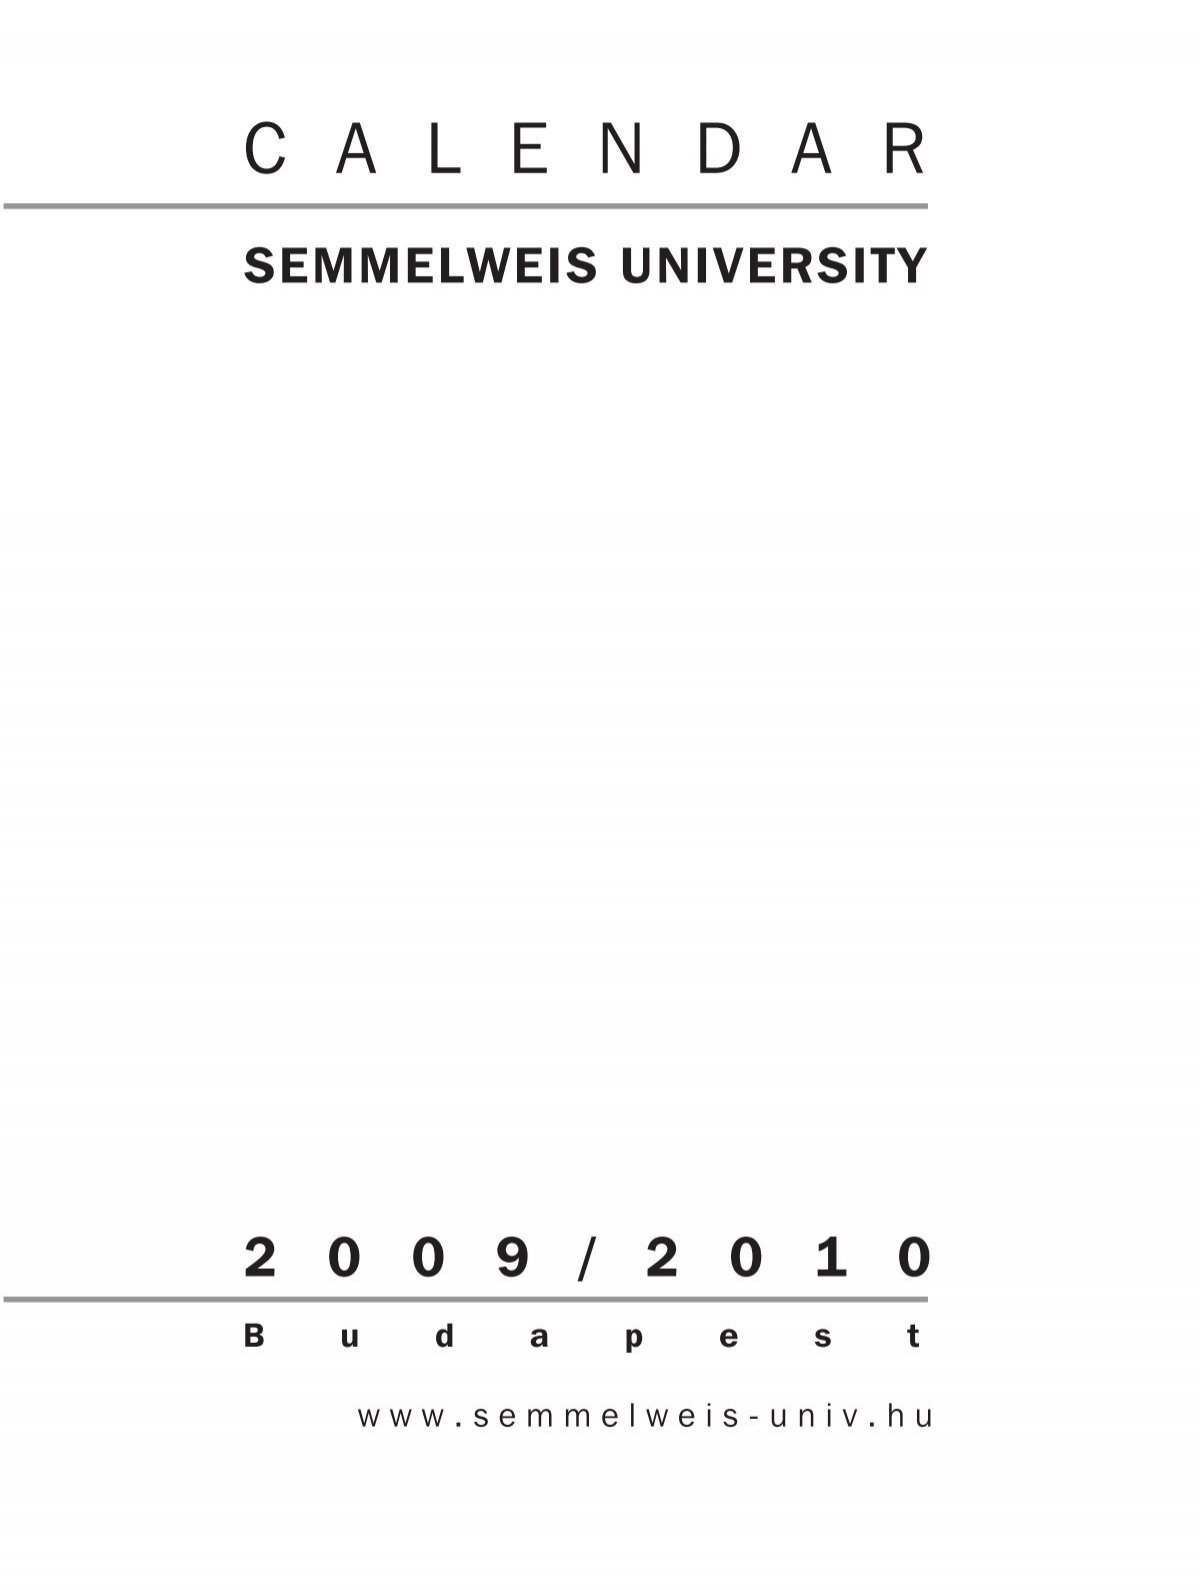 Semmelweis University 2 0 0 9 2 0 1 0